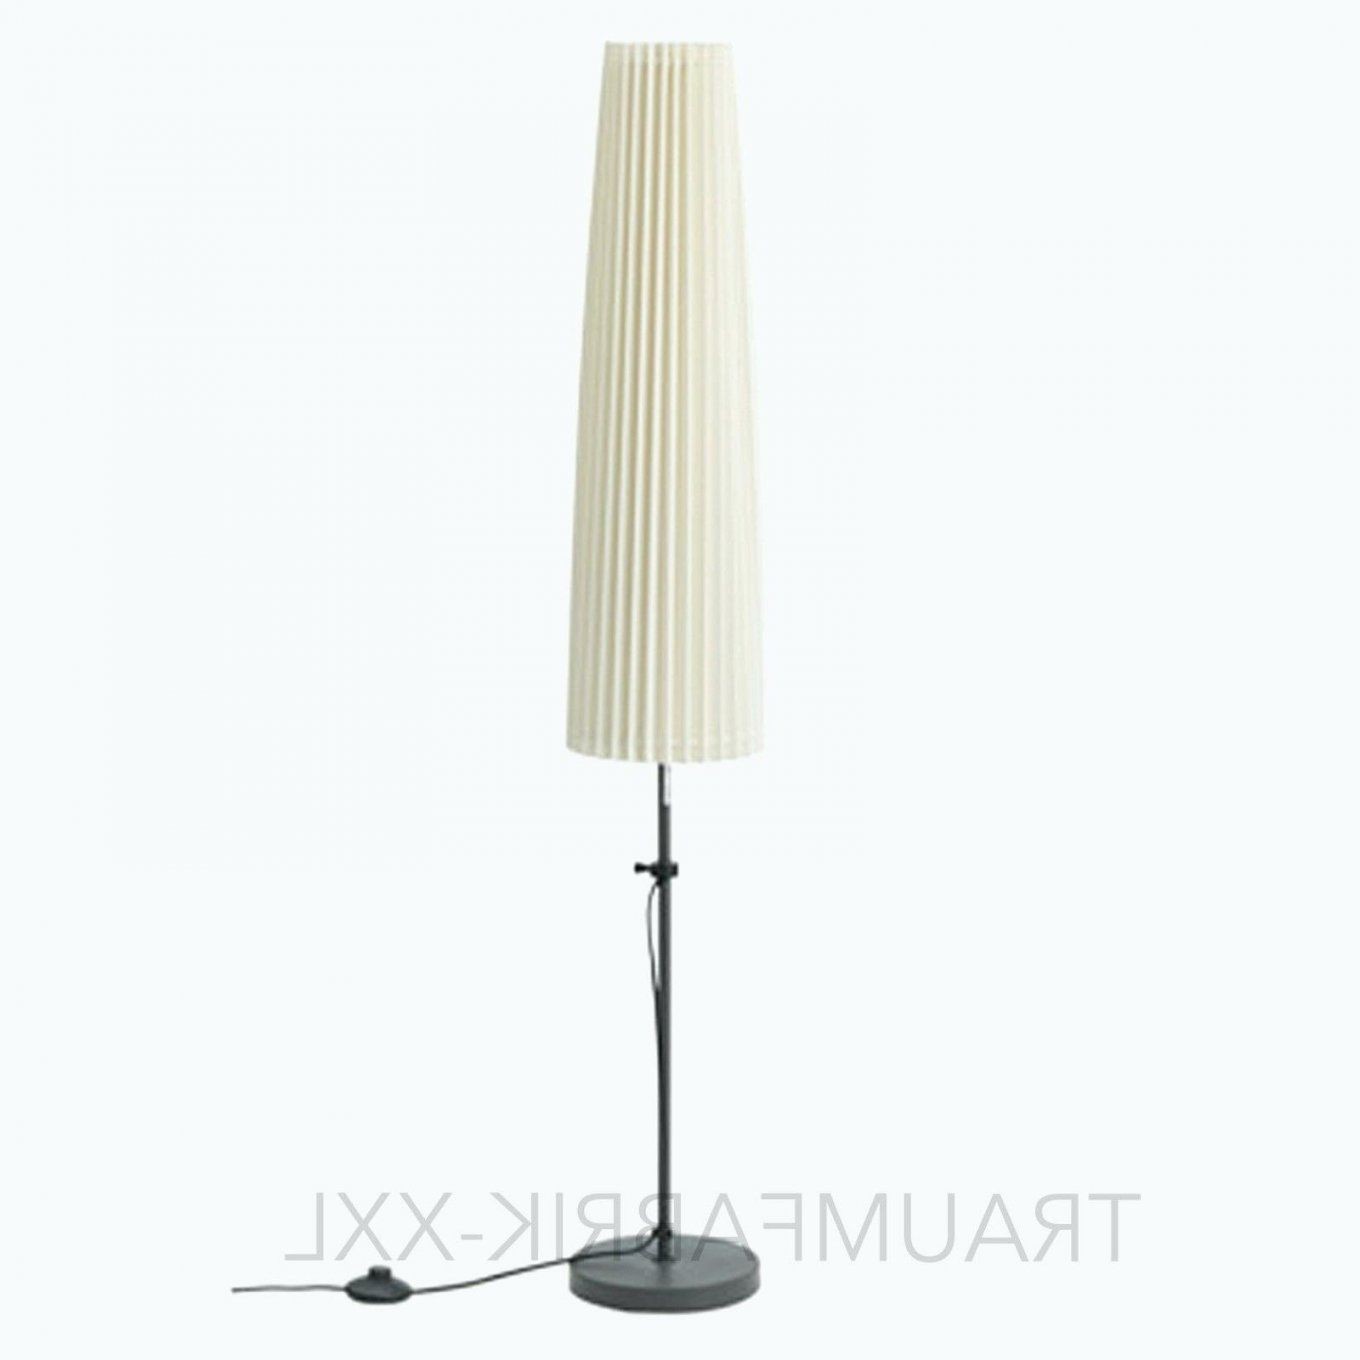 Stehlampe Schirm Weiss Facile Led Mit Und Farbwechsel Dimmbar Ikea von Lampenschirme Für Stehlampen Kaufen Bild